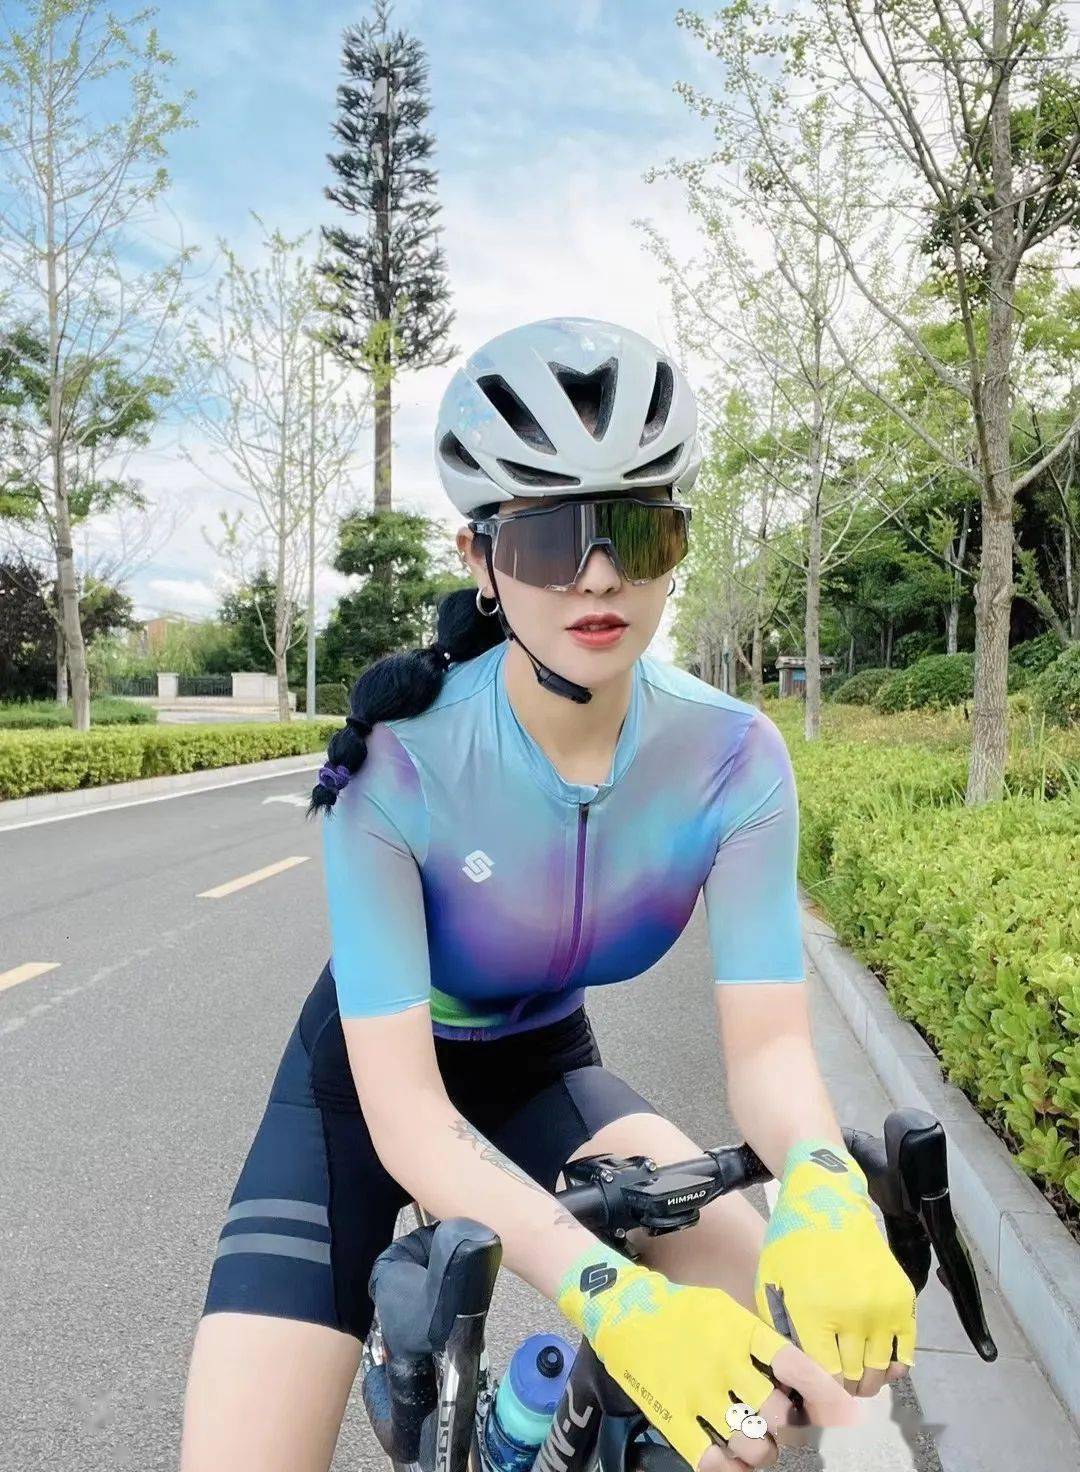 骑车自行车美女图片